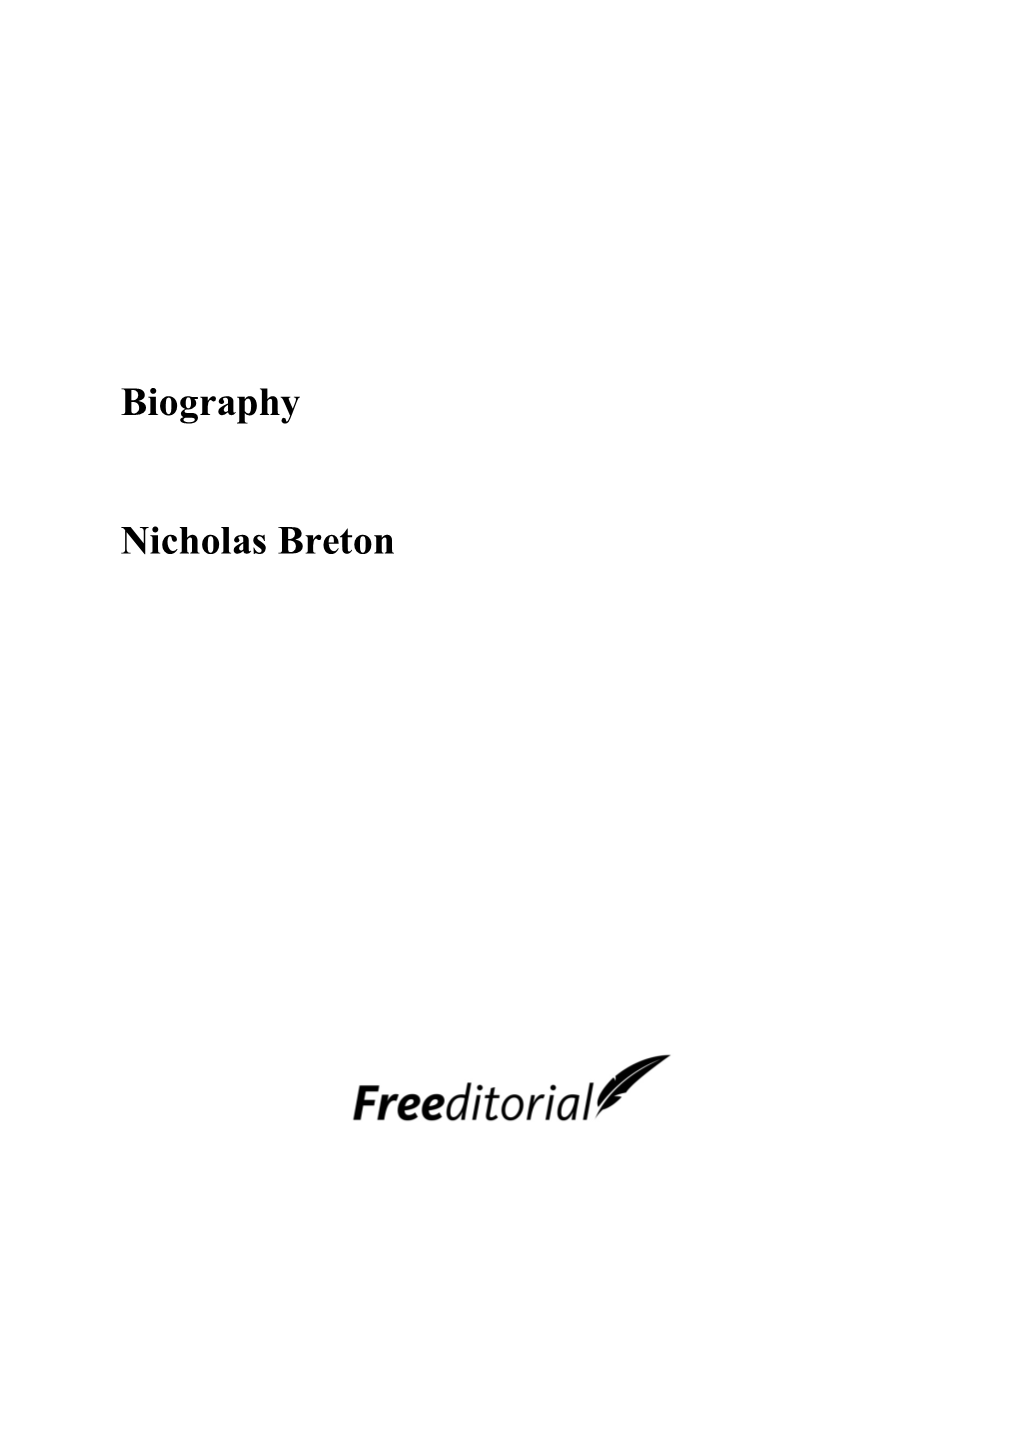 Biography Nicholas Breton